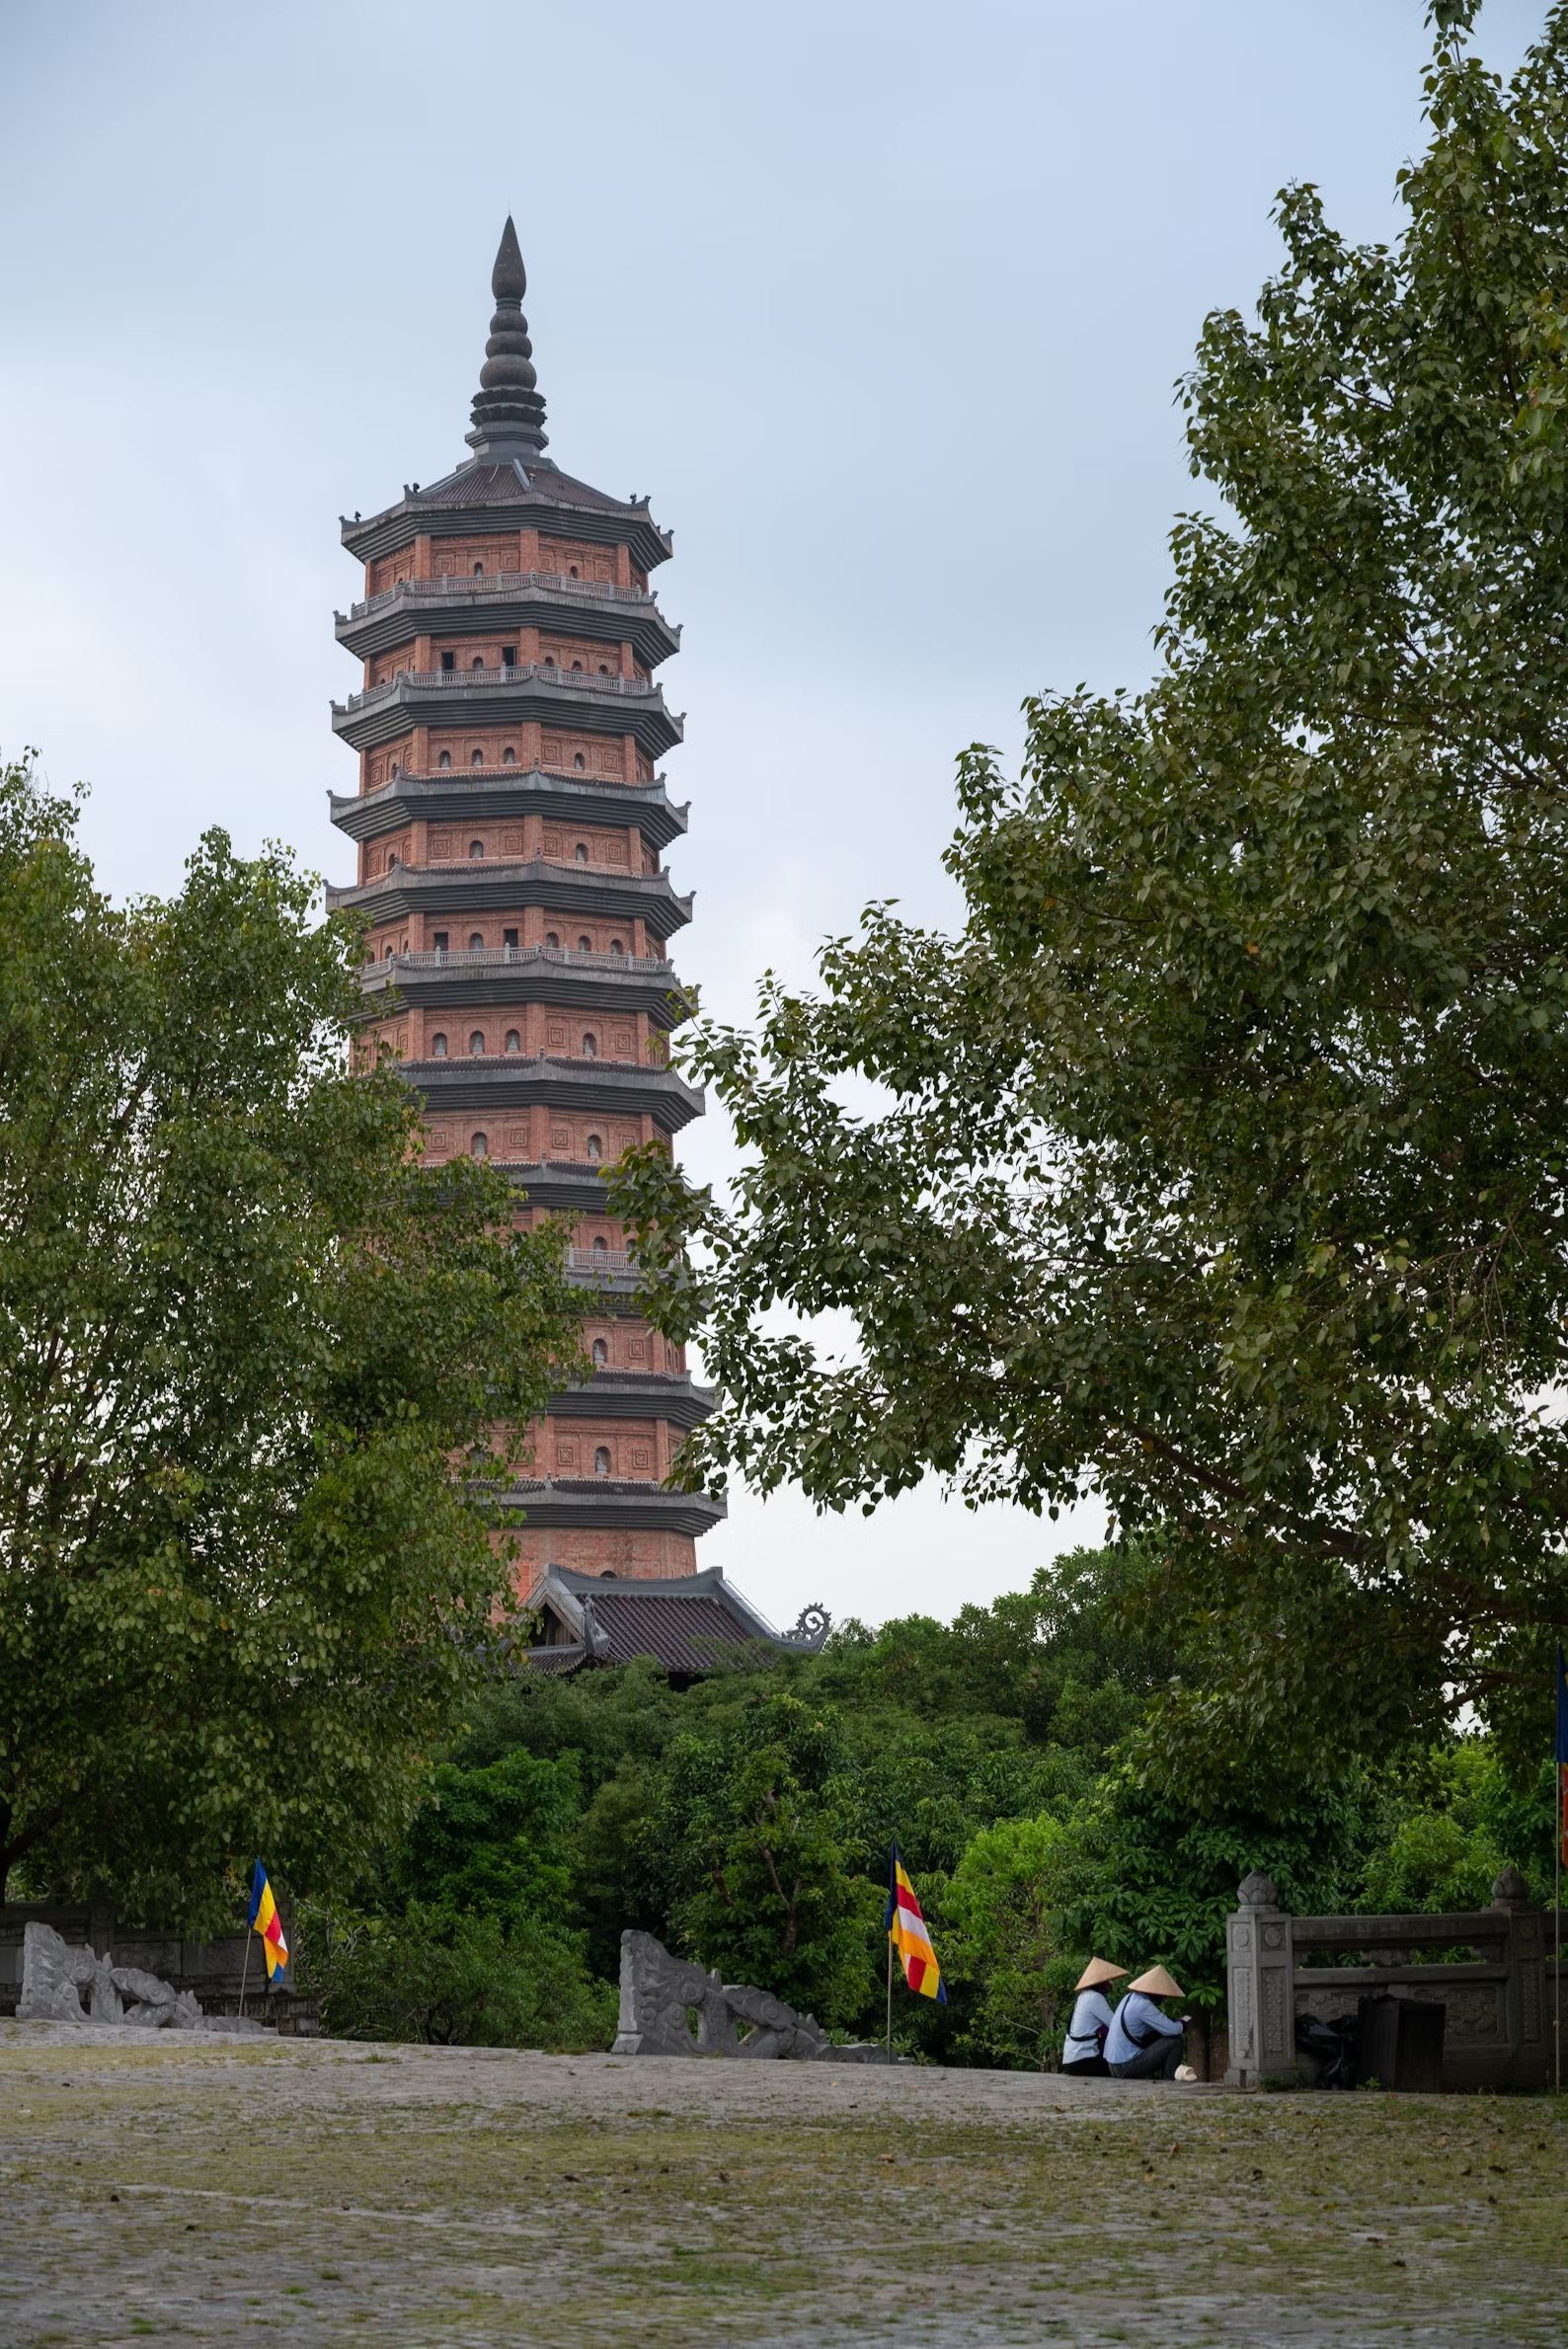 bai dinh pagoda - ninh binh